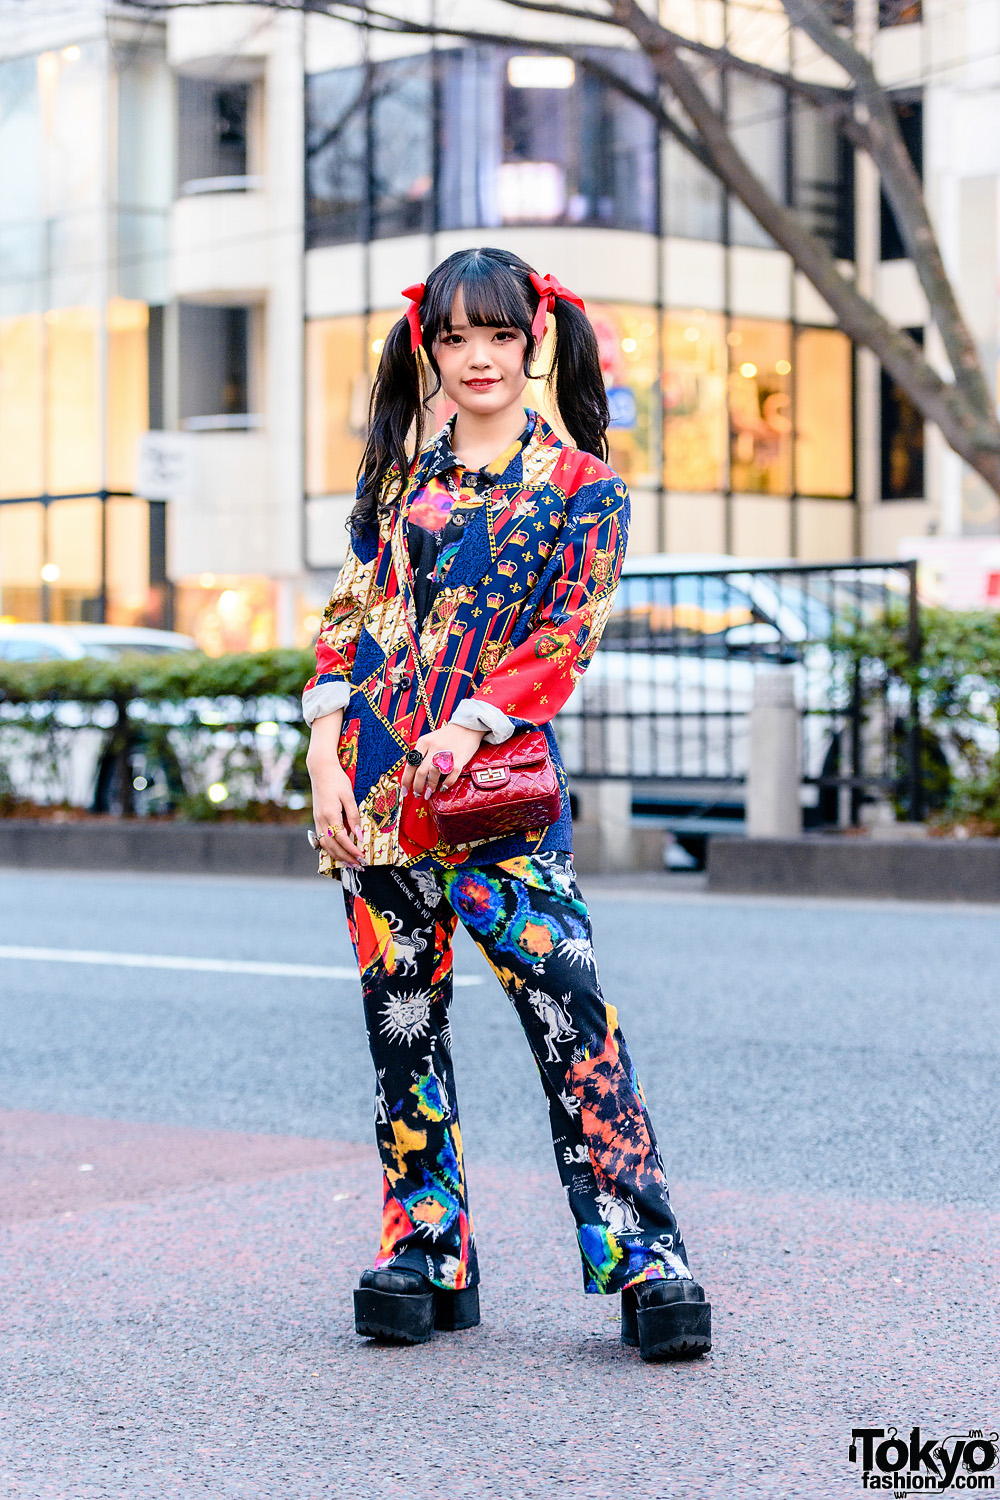 Harajuku Mixed-Print Style w/ Twin Tails, Kobinai Printed Suit, Resale Fashion, Quilted Sling Bag, 6%DokiDoki Rings & Yosuke Platforms